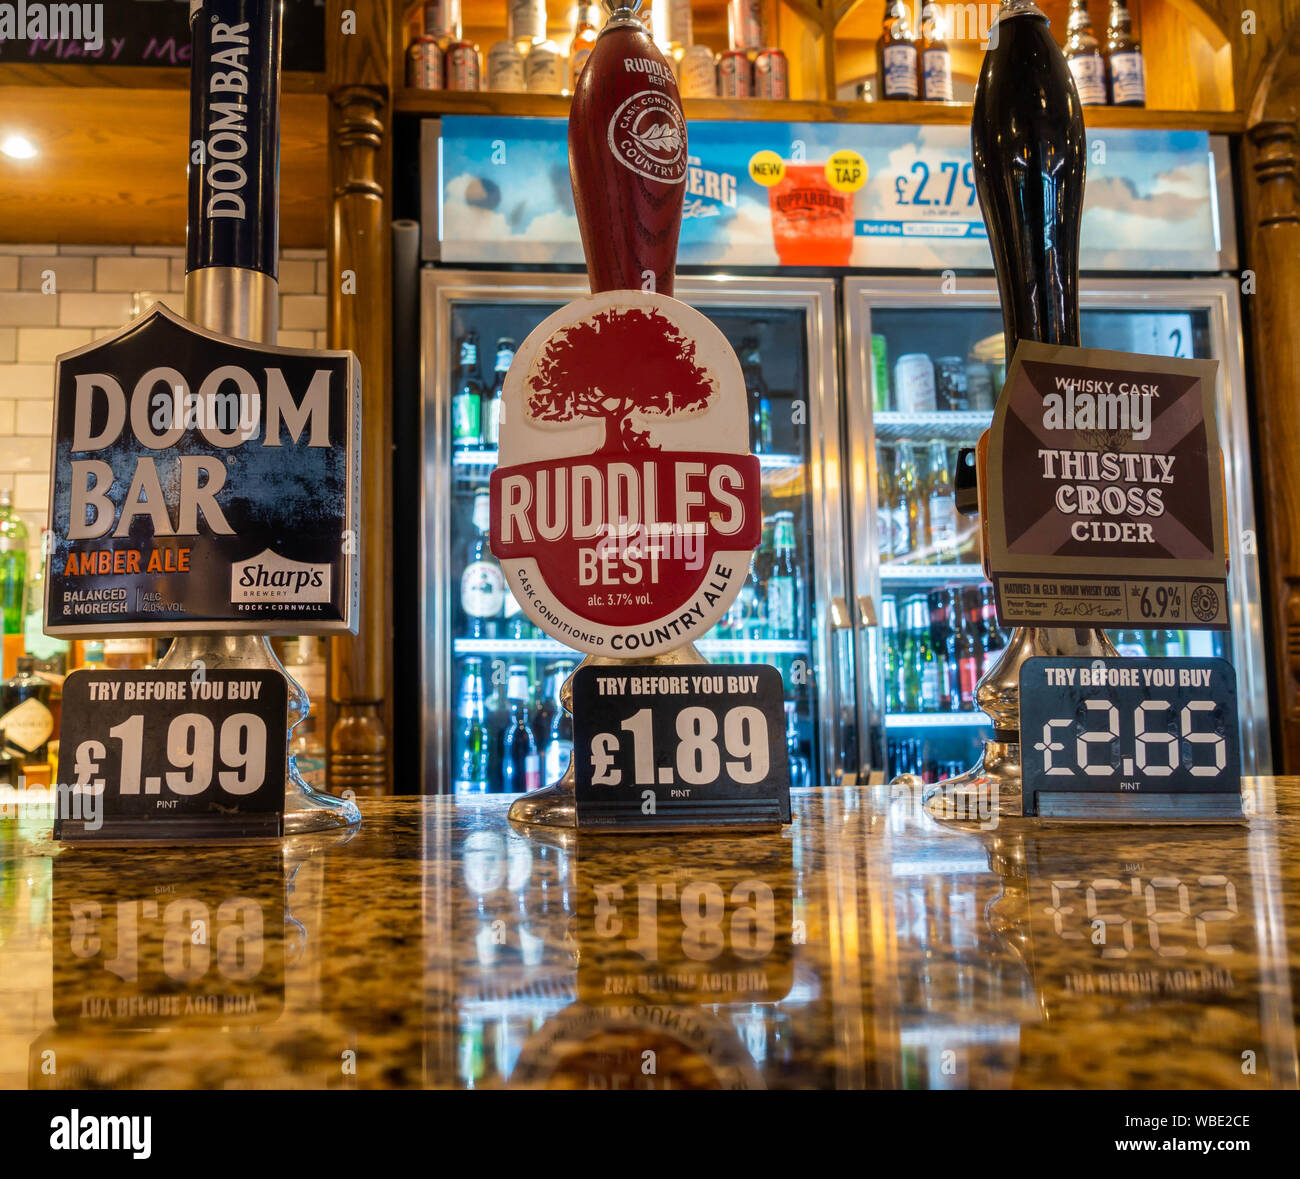 Nord-süd-Gefälle. Bier weniger als zwei Pfund ein Pint in JD Wetherspoon Pub in Nordost-england. Großbritannien Stockfoto